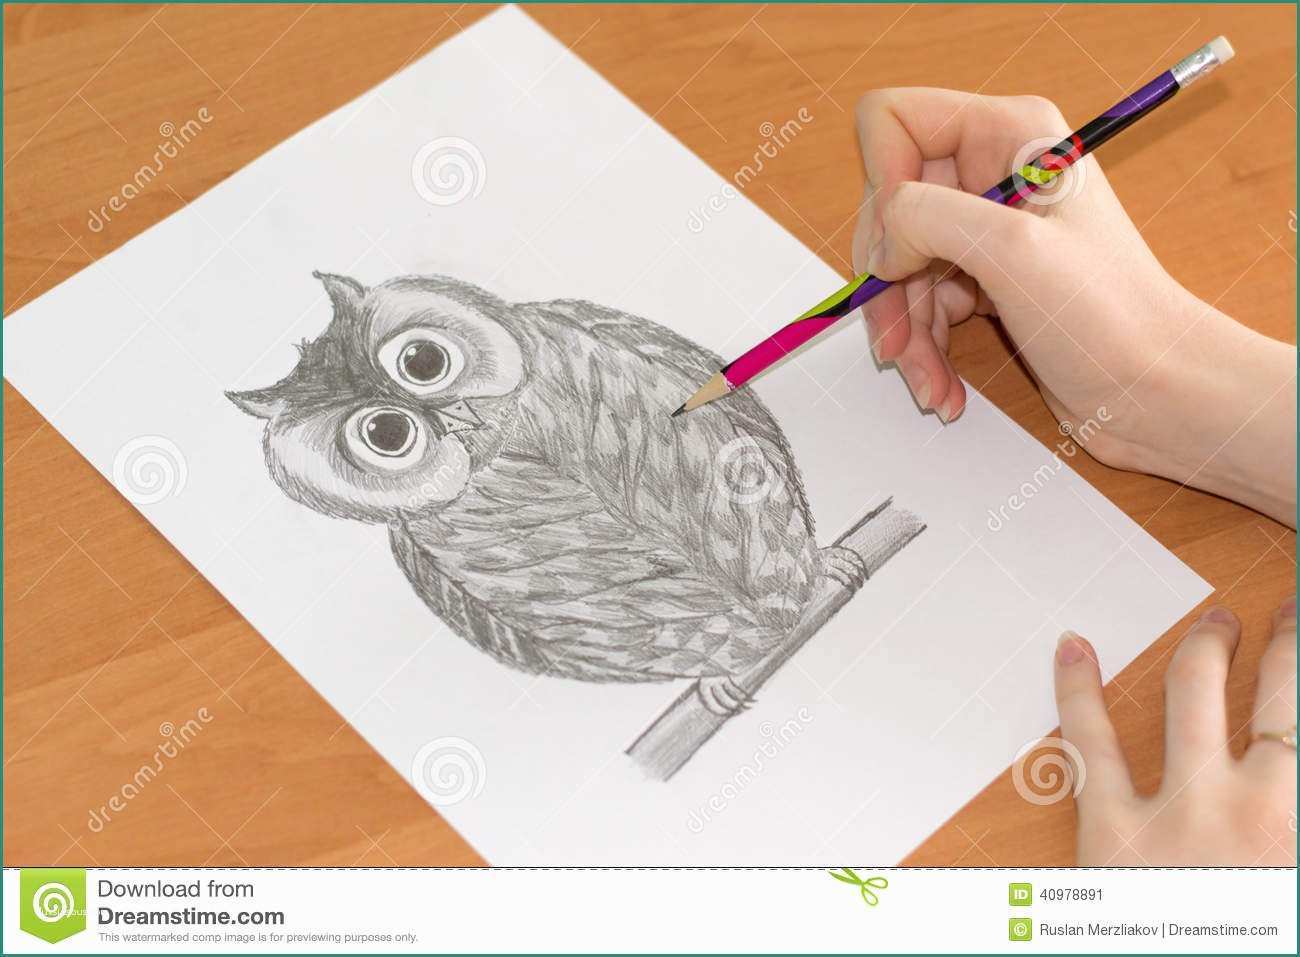 Disegnare Un Gufo E Disegno Del Gufo Su Un Foglio Di Carta Fotografia Stock